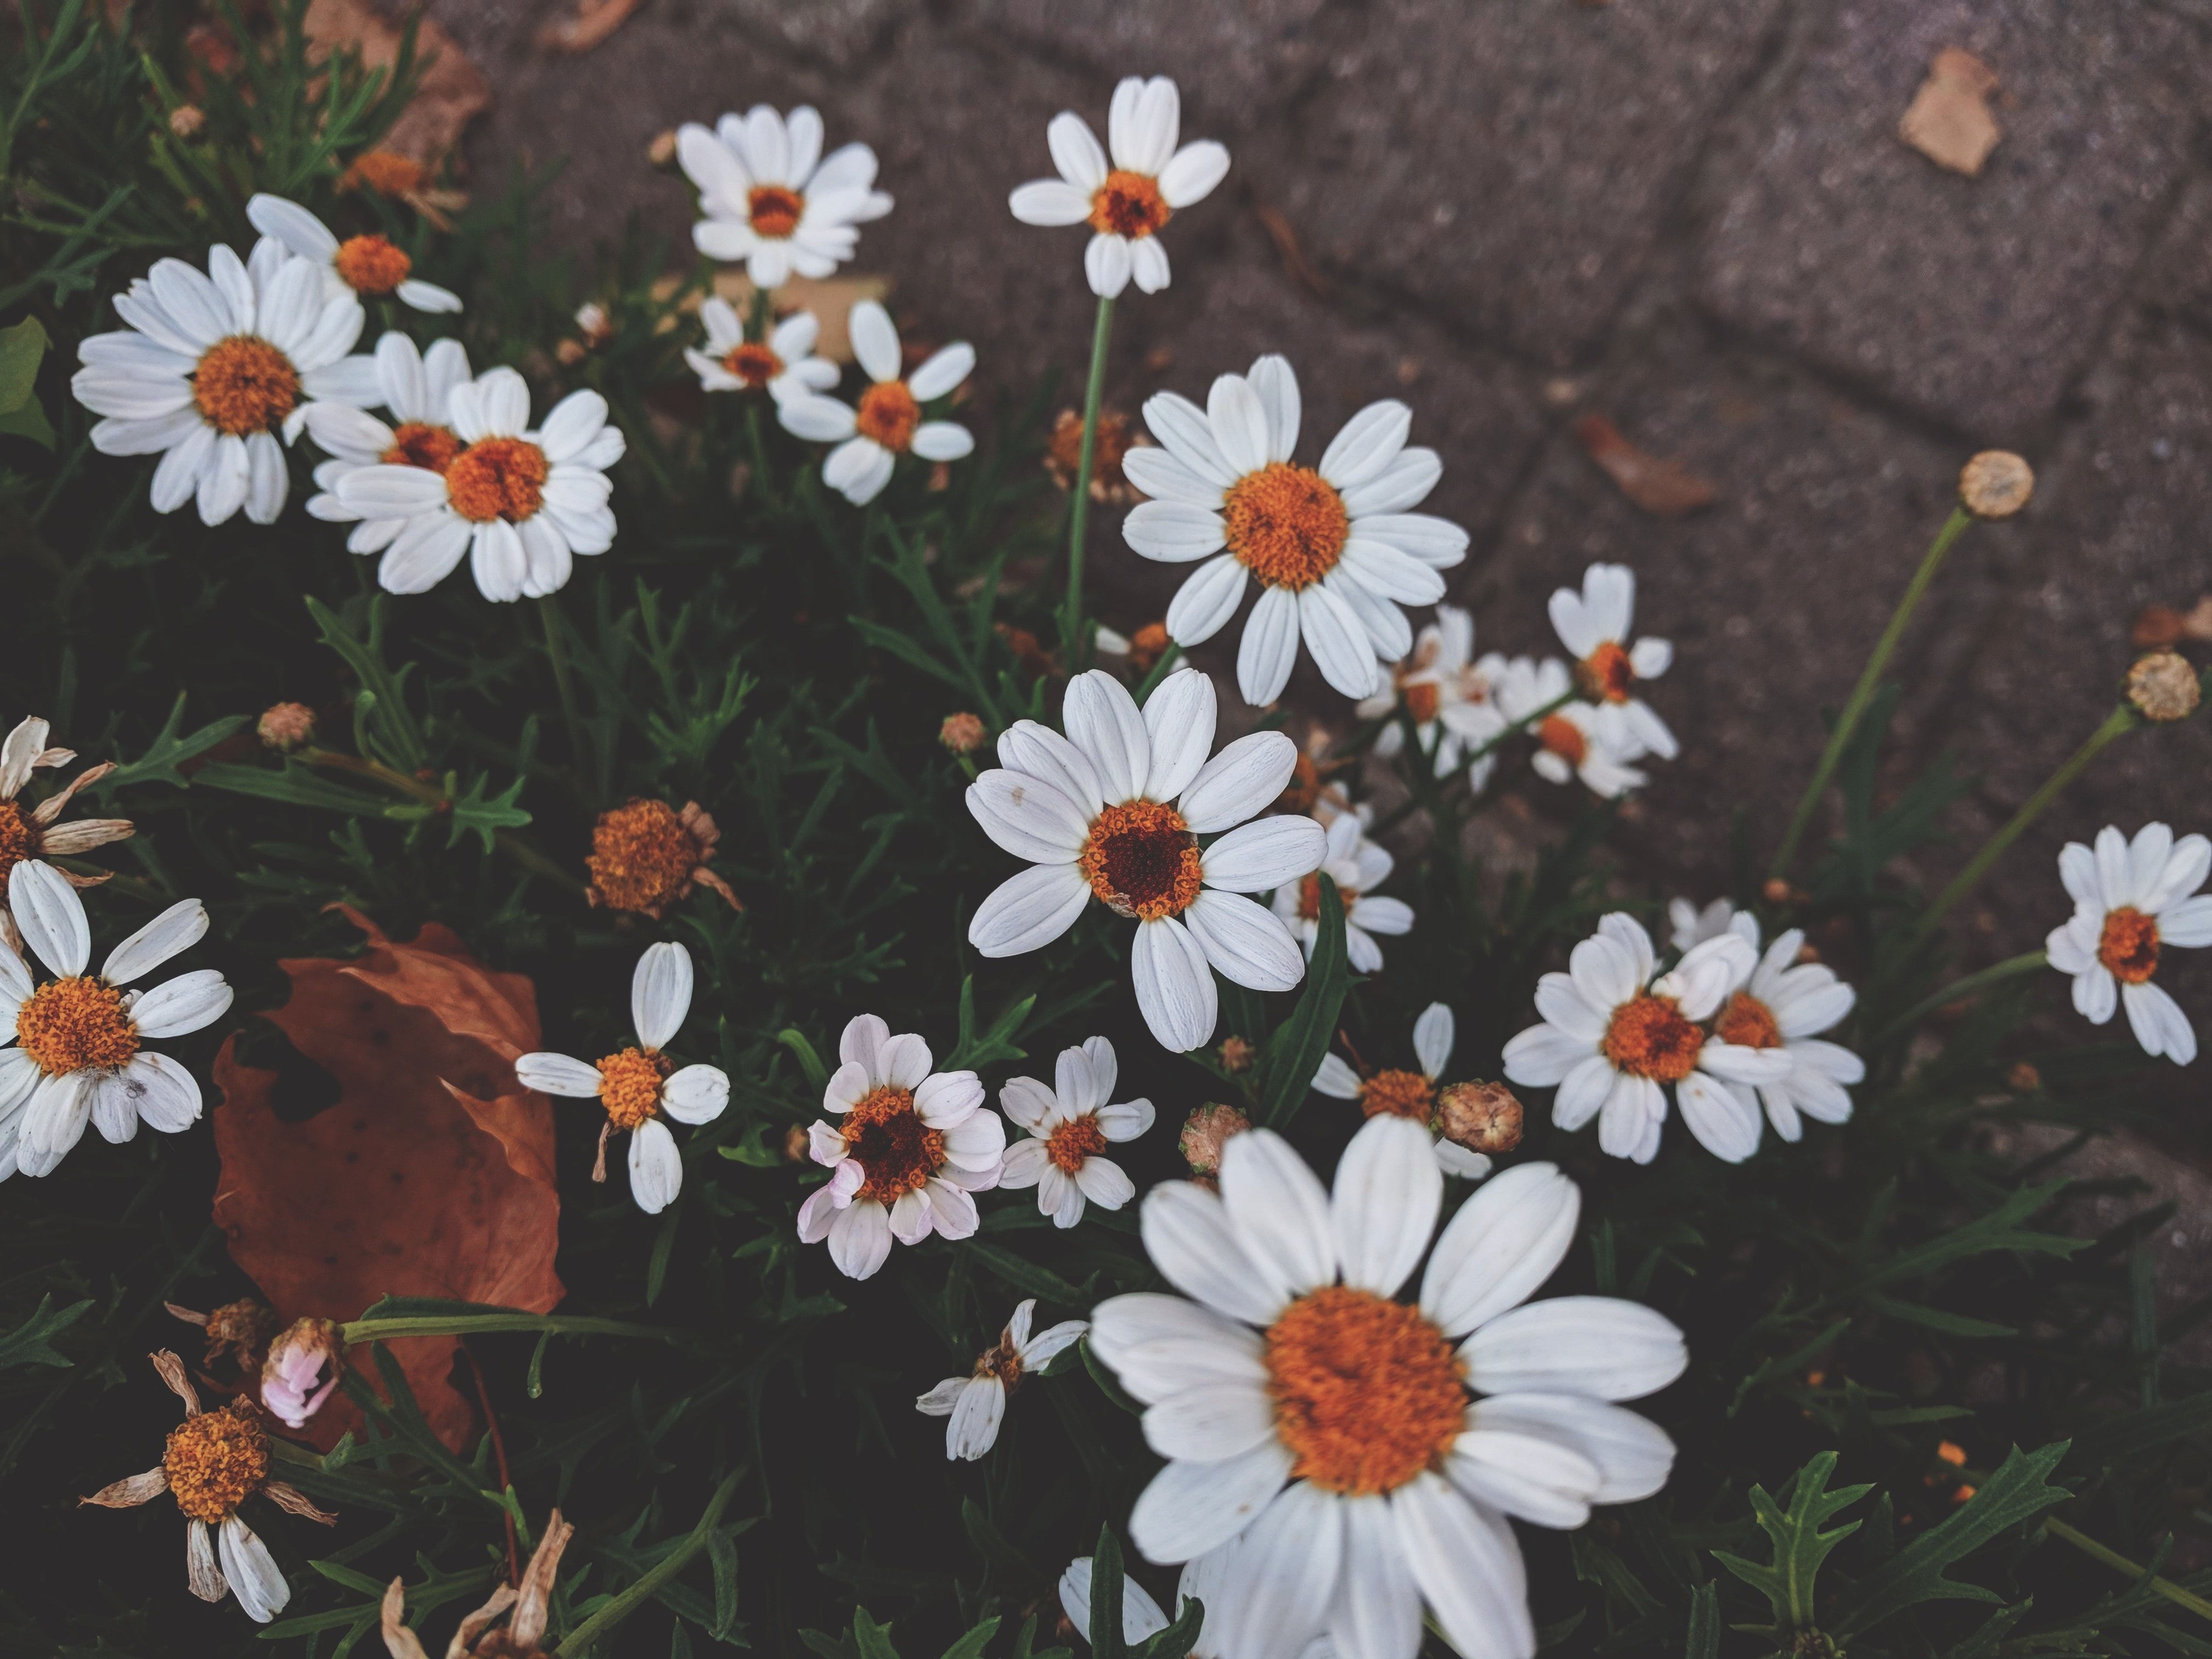 White Daisy Flower in Dark Background · Free